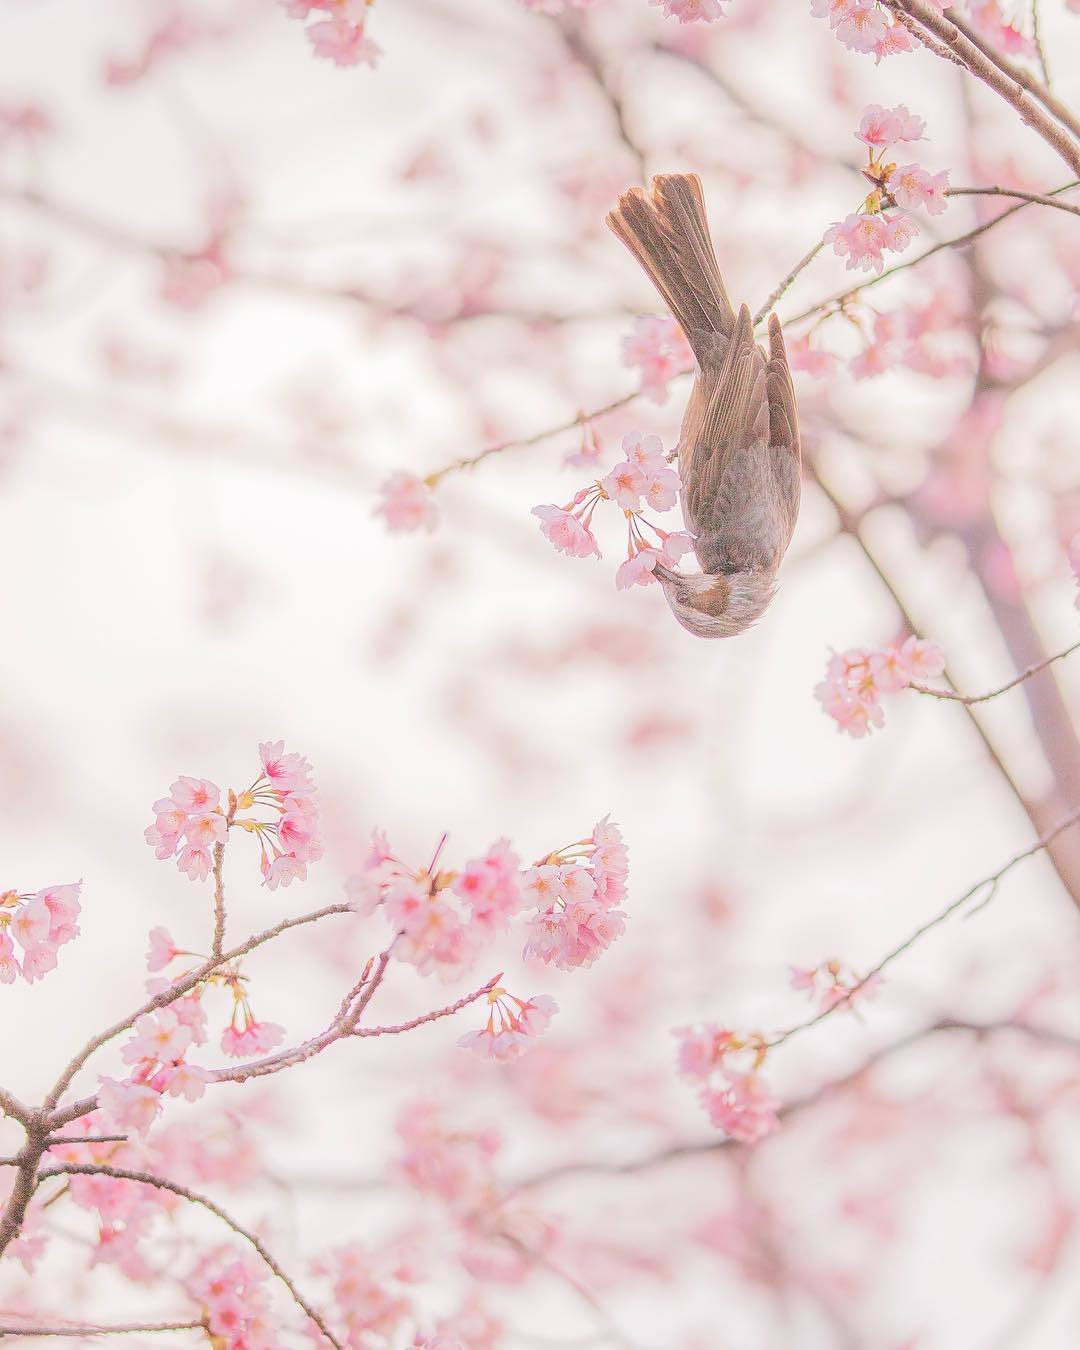  樱花与夜莺，来自摄影师Ubutsq。 